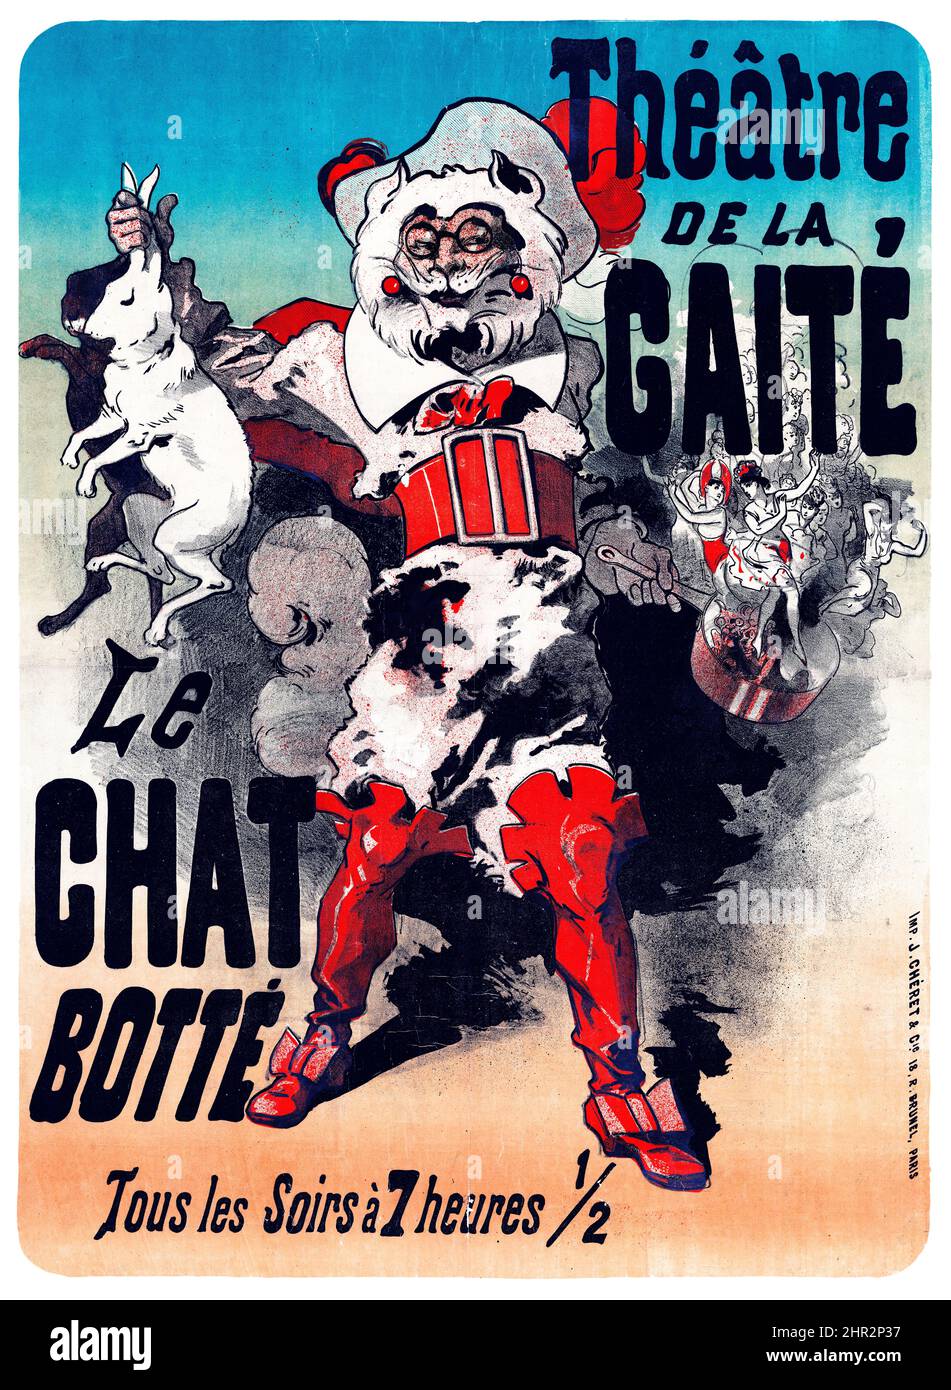 Jules Chéret - Théâtre de la Gaité. Le Chat botté. Tous les Soirs à 7 cures ½, 1878. Cartel de la belle époque. Resolución muy alta. Mejorado digitalmente. Foto de stock